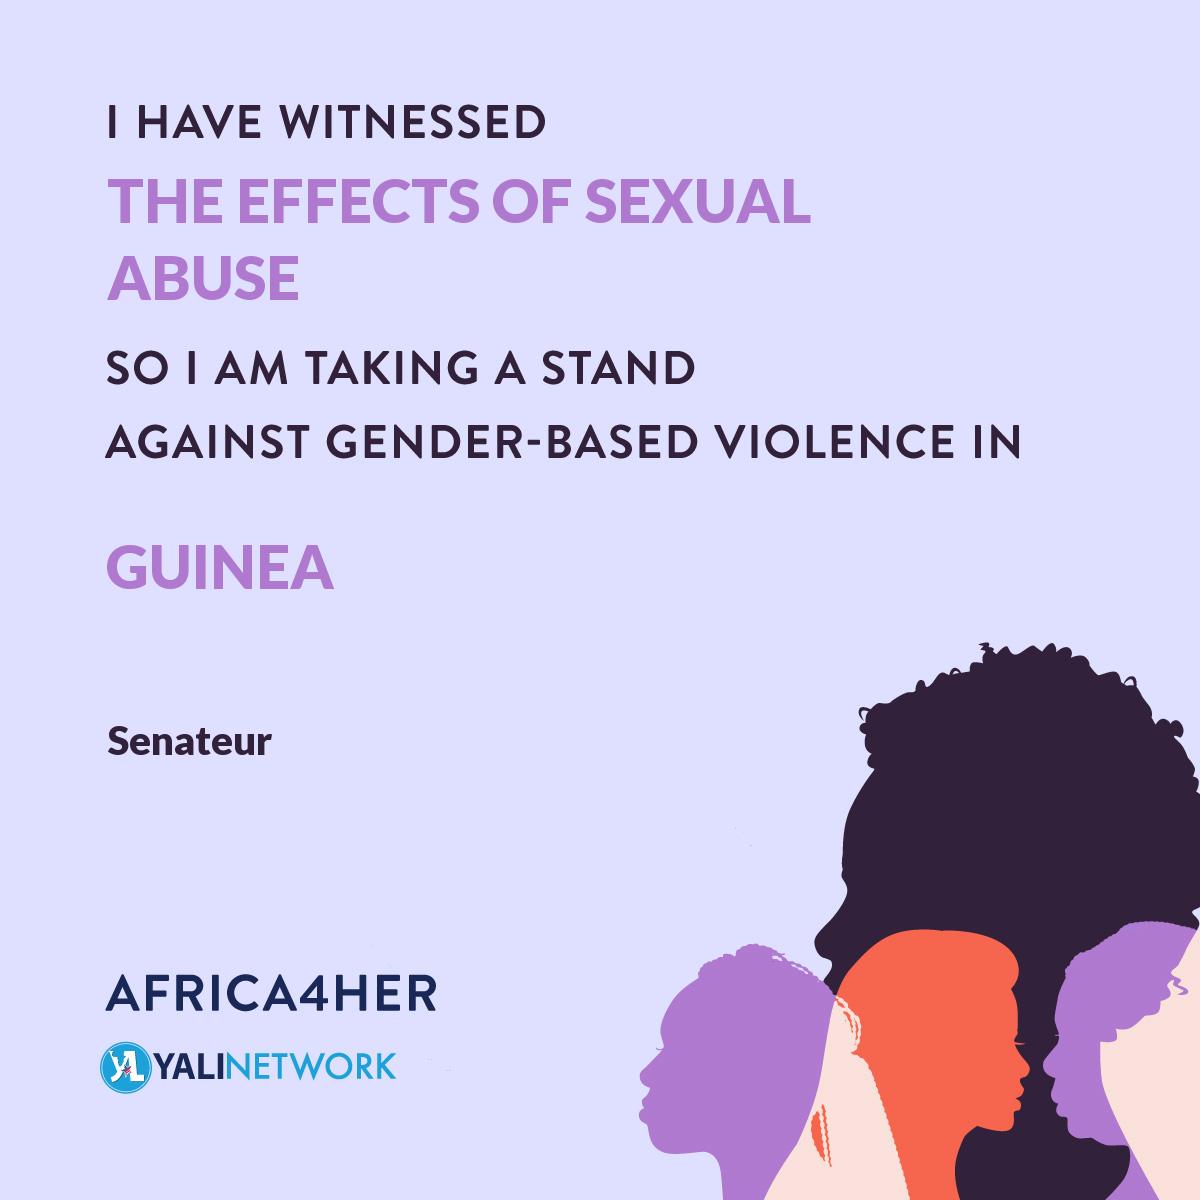 La violence sexiste est un problème qui touche plus d'une femme sur trois dans le monde. Luttons contre la VBG en scolarisant nos filles, égalités au travail etc. Prenons position contre les Violences Basées sur le Genre en nous rejoignant sur yali.state.gov/4her
#Africa4her